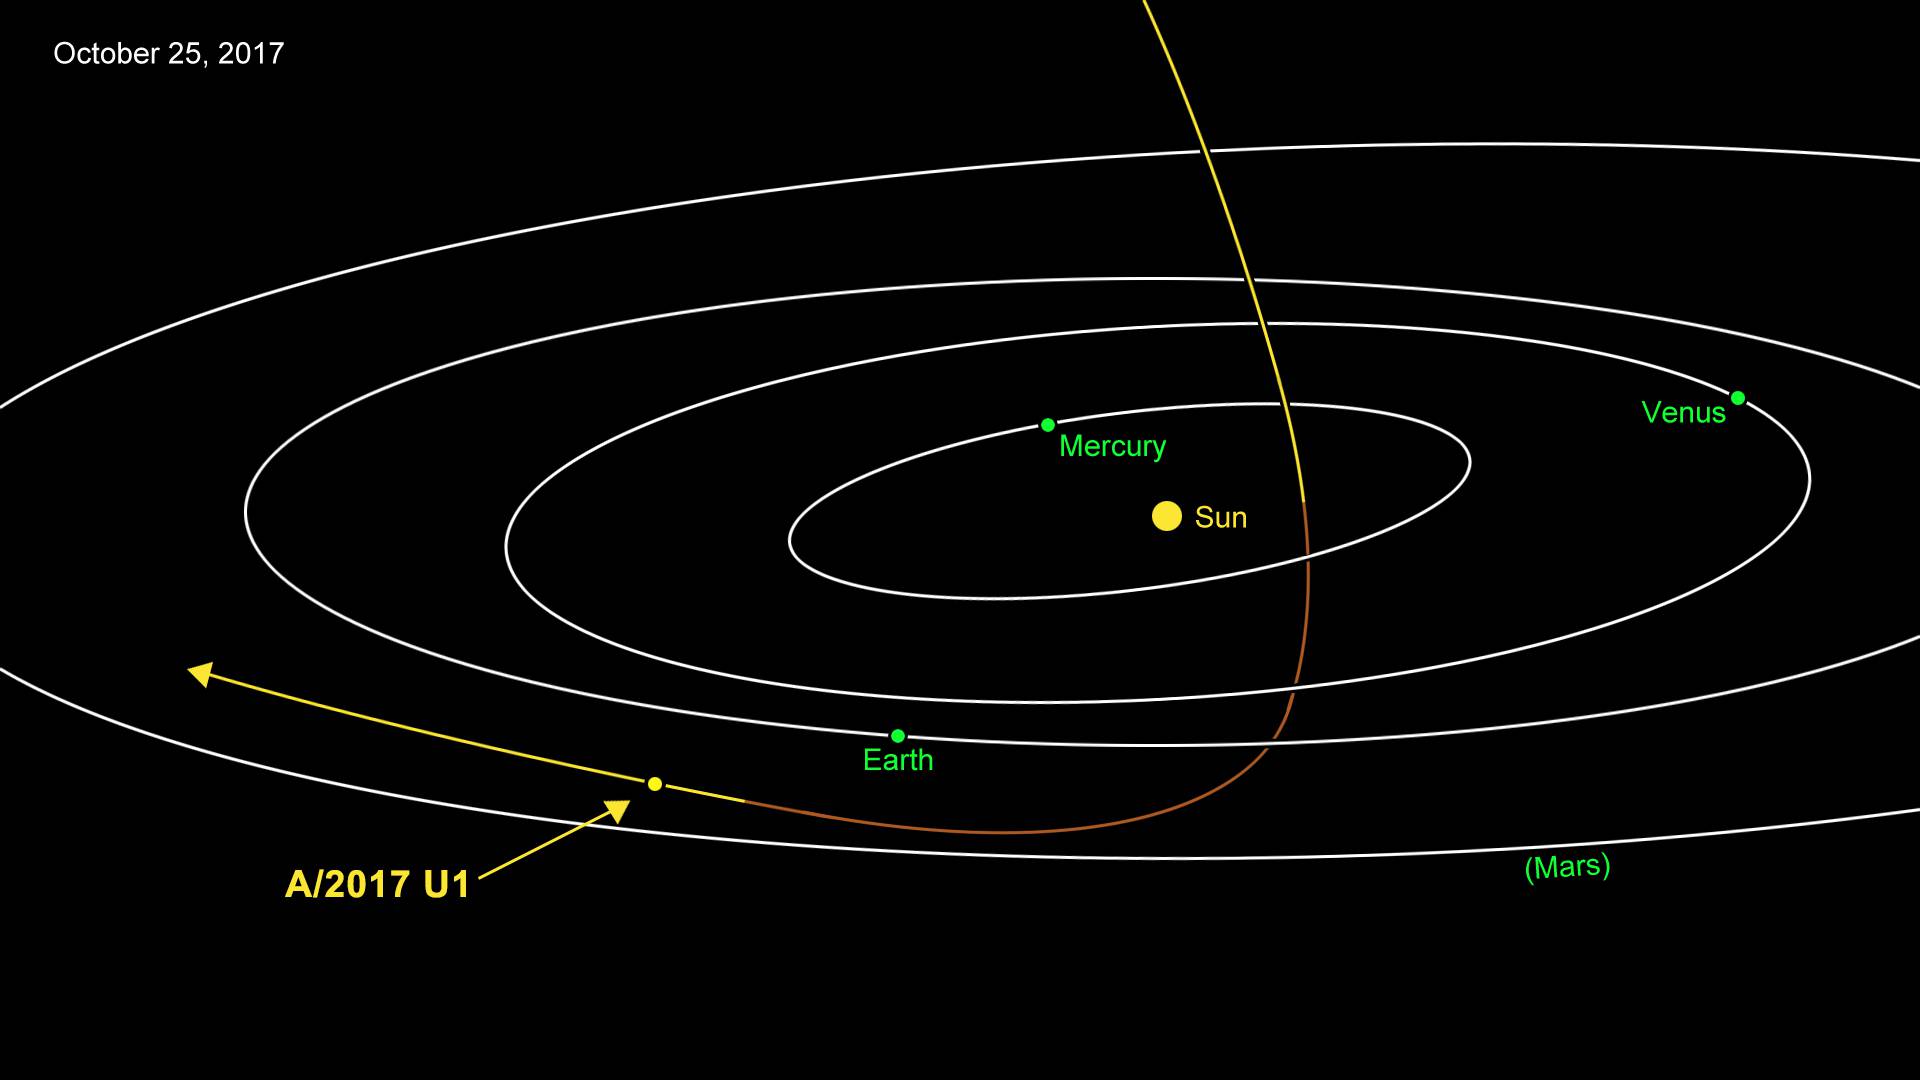 Tajanstveni asteroid koji nas je mimoišao je - svemirski brod?!